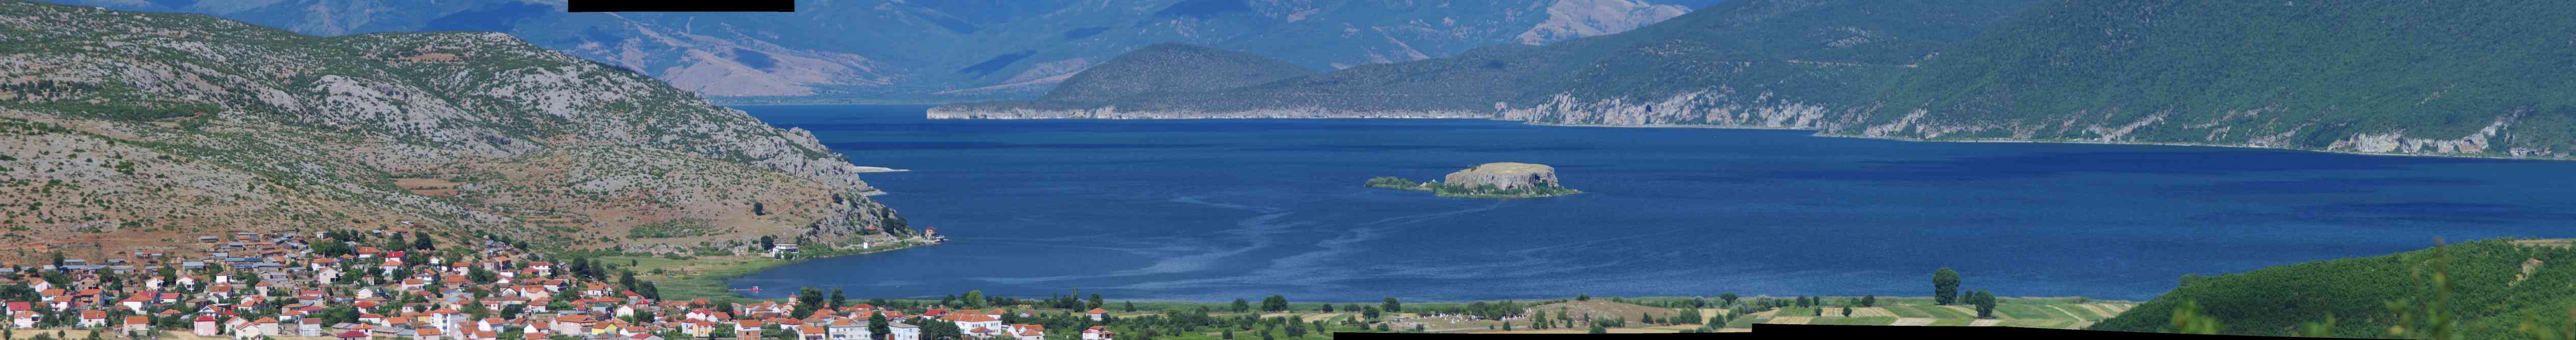 Panoramique du lac de Prespa, le 17 juillet 2016